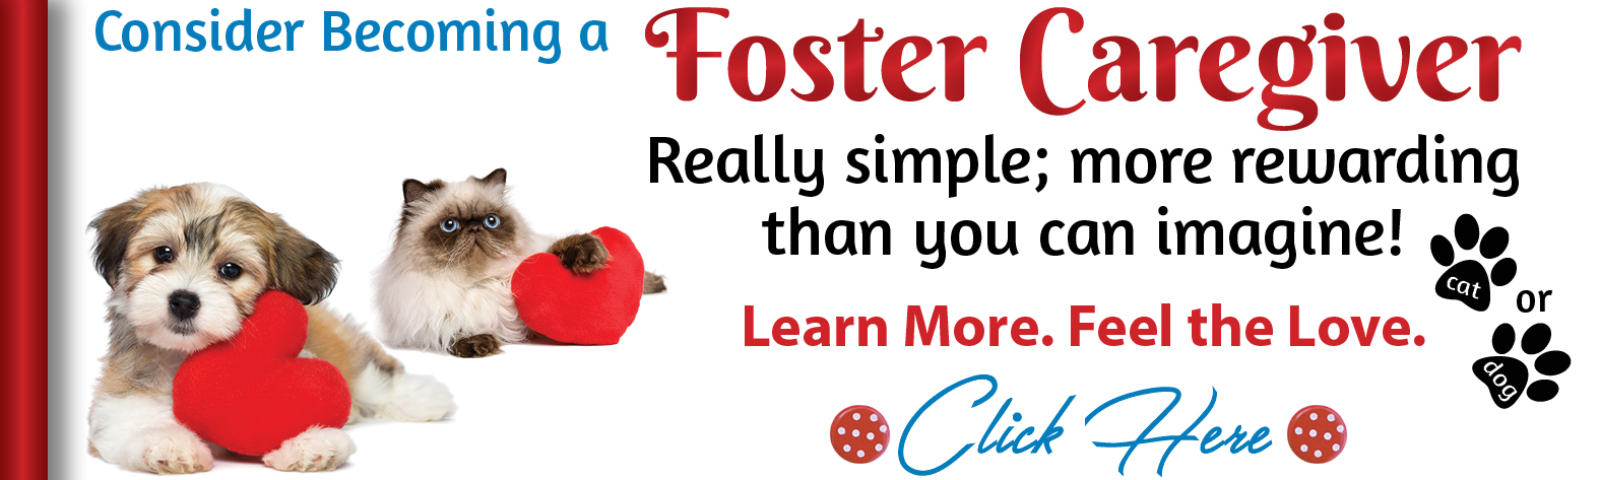 Become a Foster Cargiver slider V2